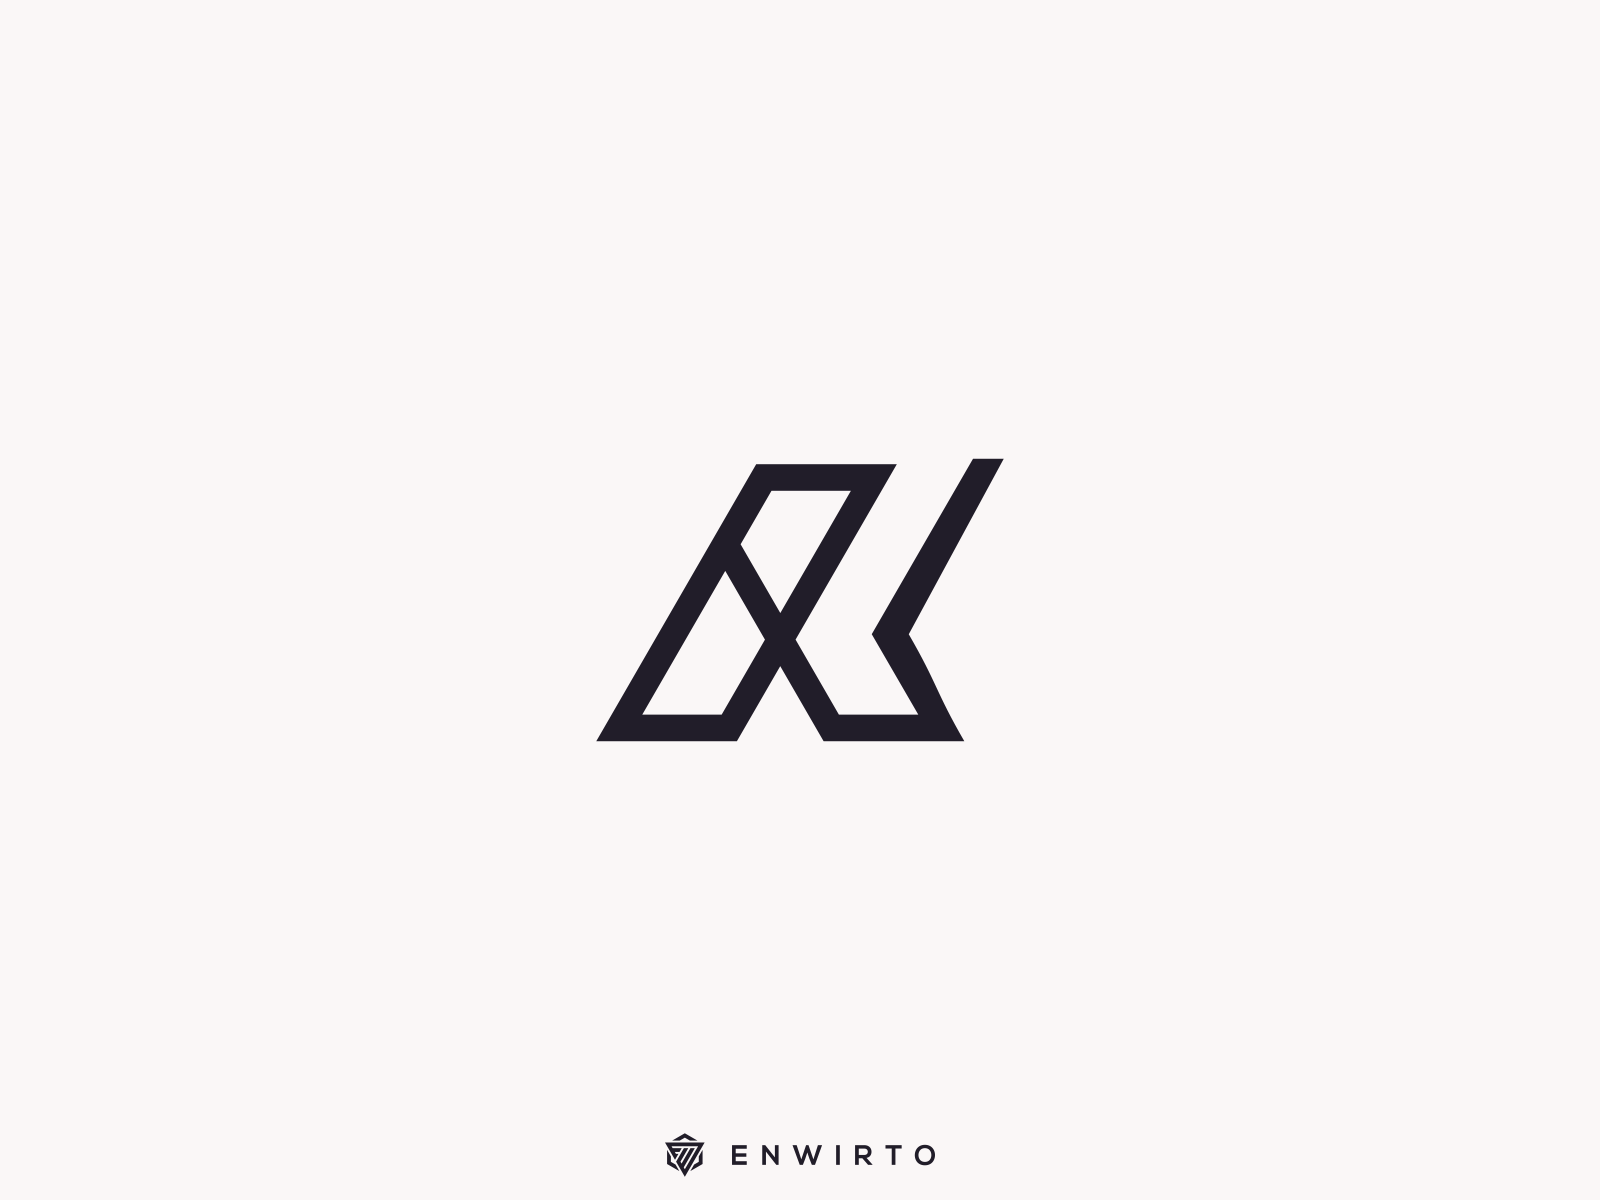 AK Concept Logo by Enwirto on Dribbble